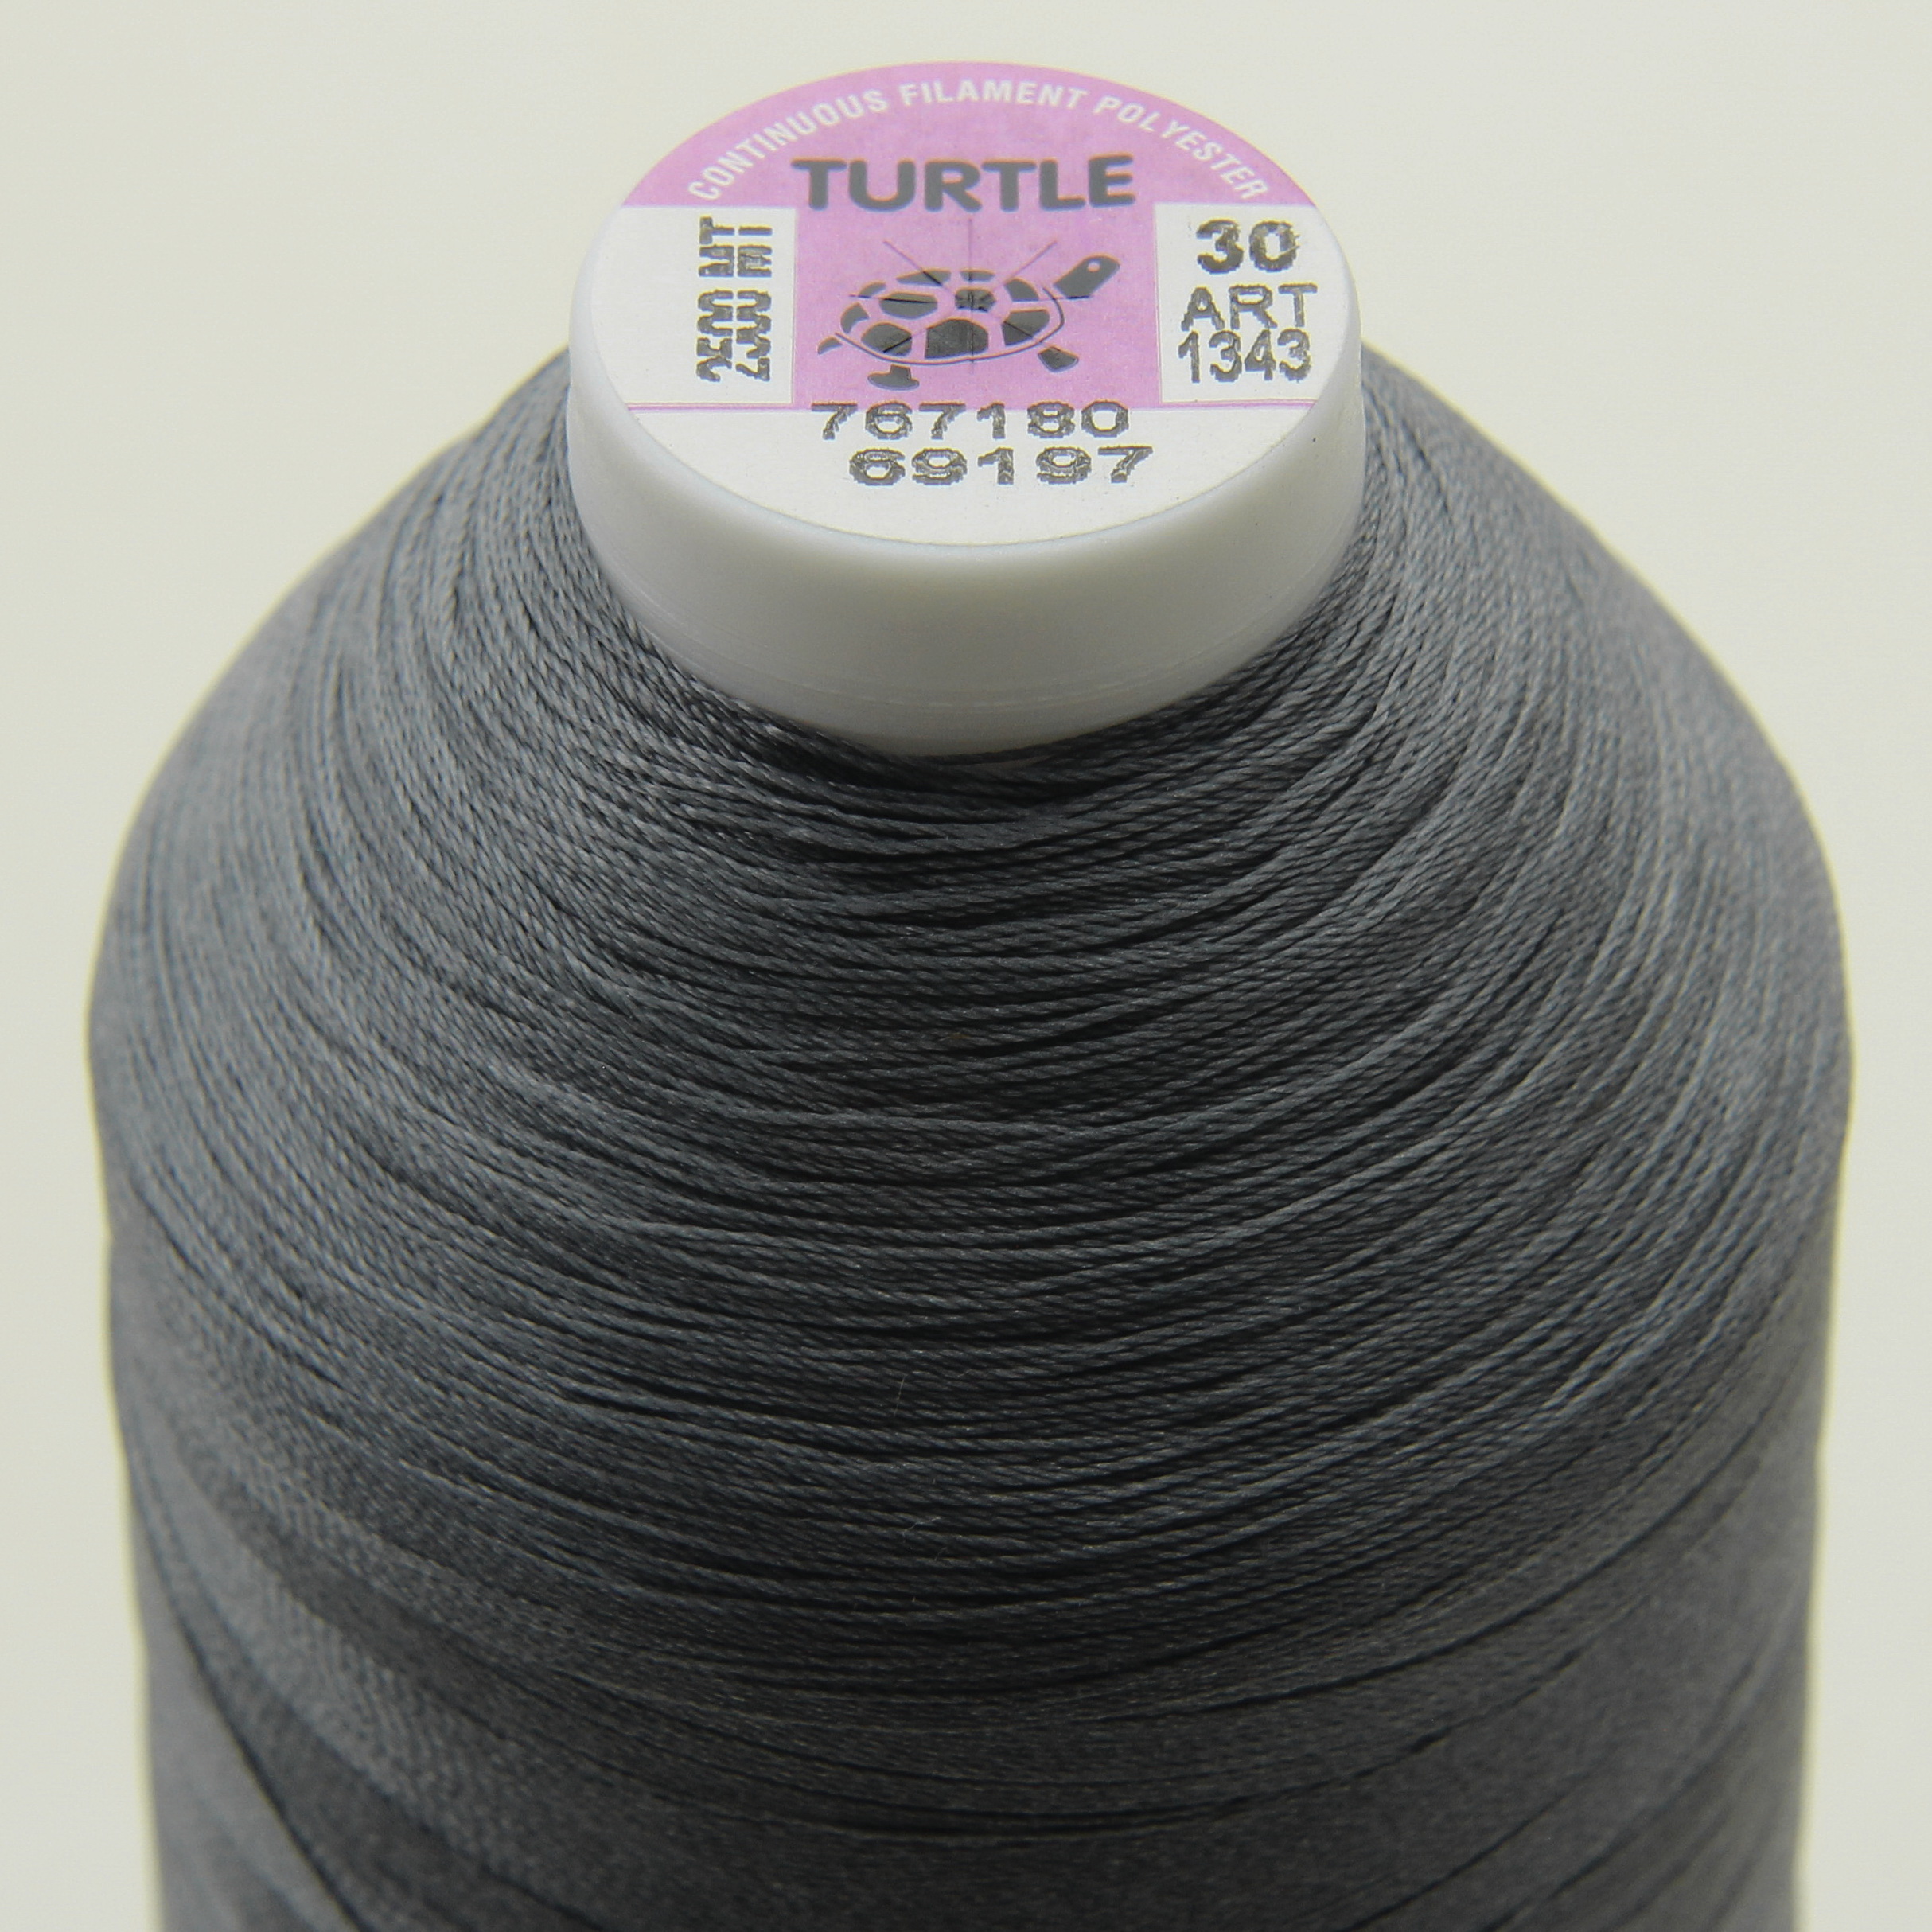 Нитка TURTLE (Туреччина) №30 69197 для оверлоку, колір сірий, довжина 2500м. детальна фотка